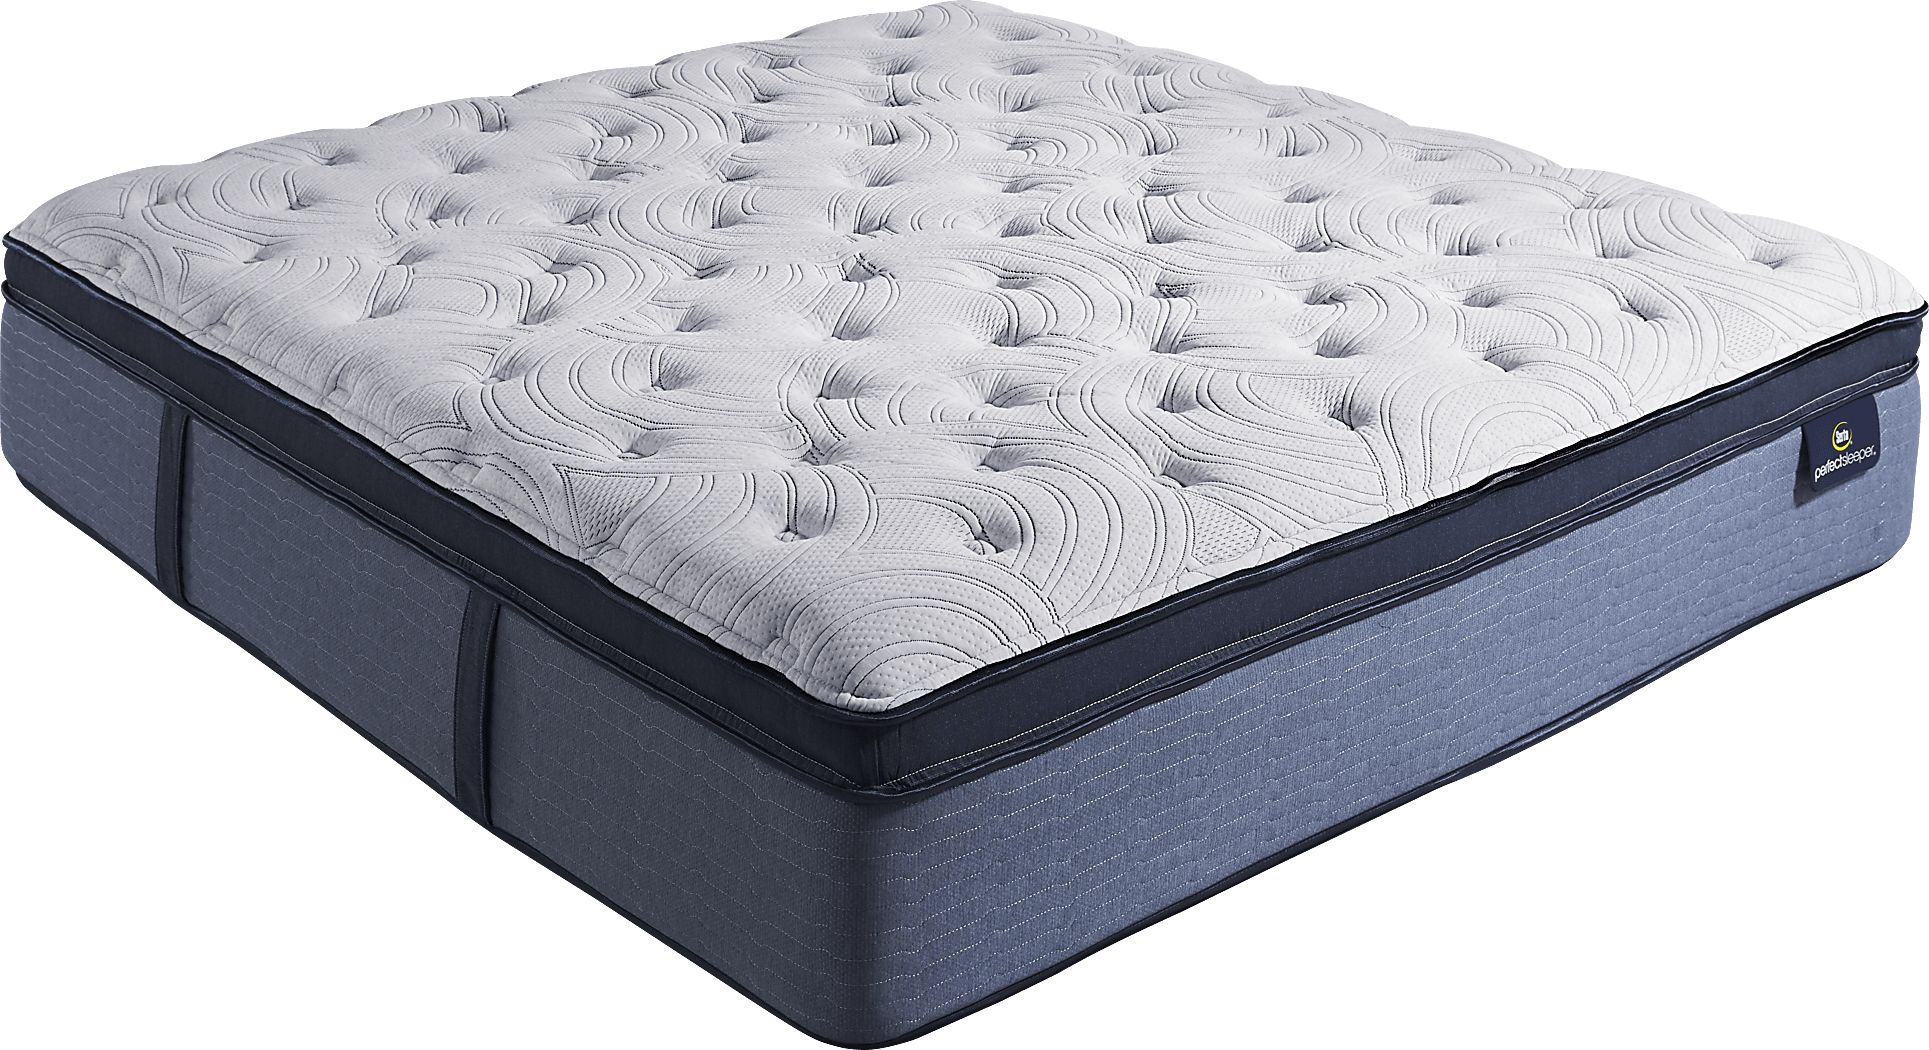 serta perfect sleeper castleview king mattress set